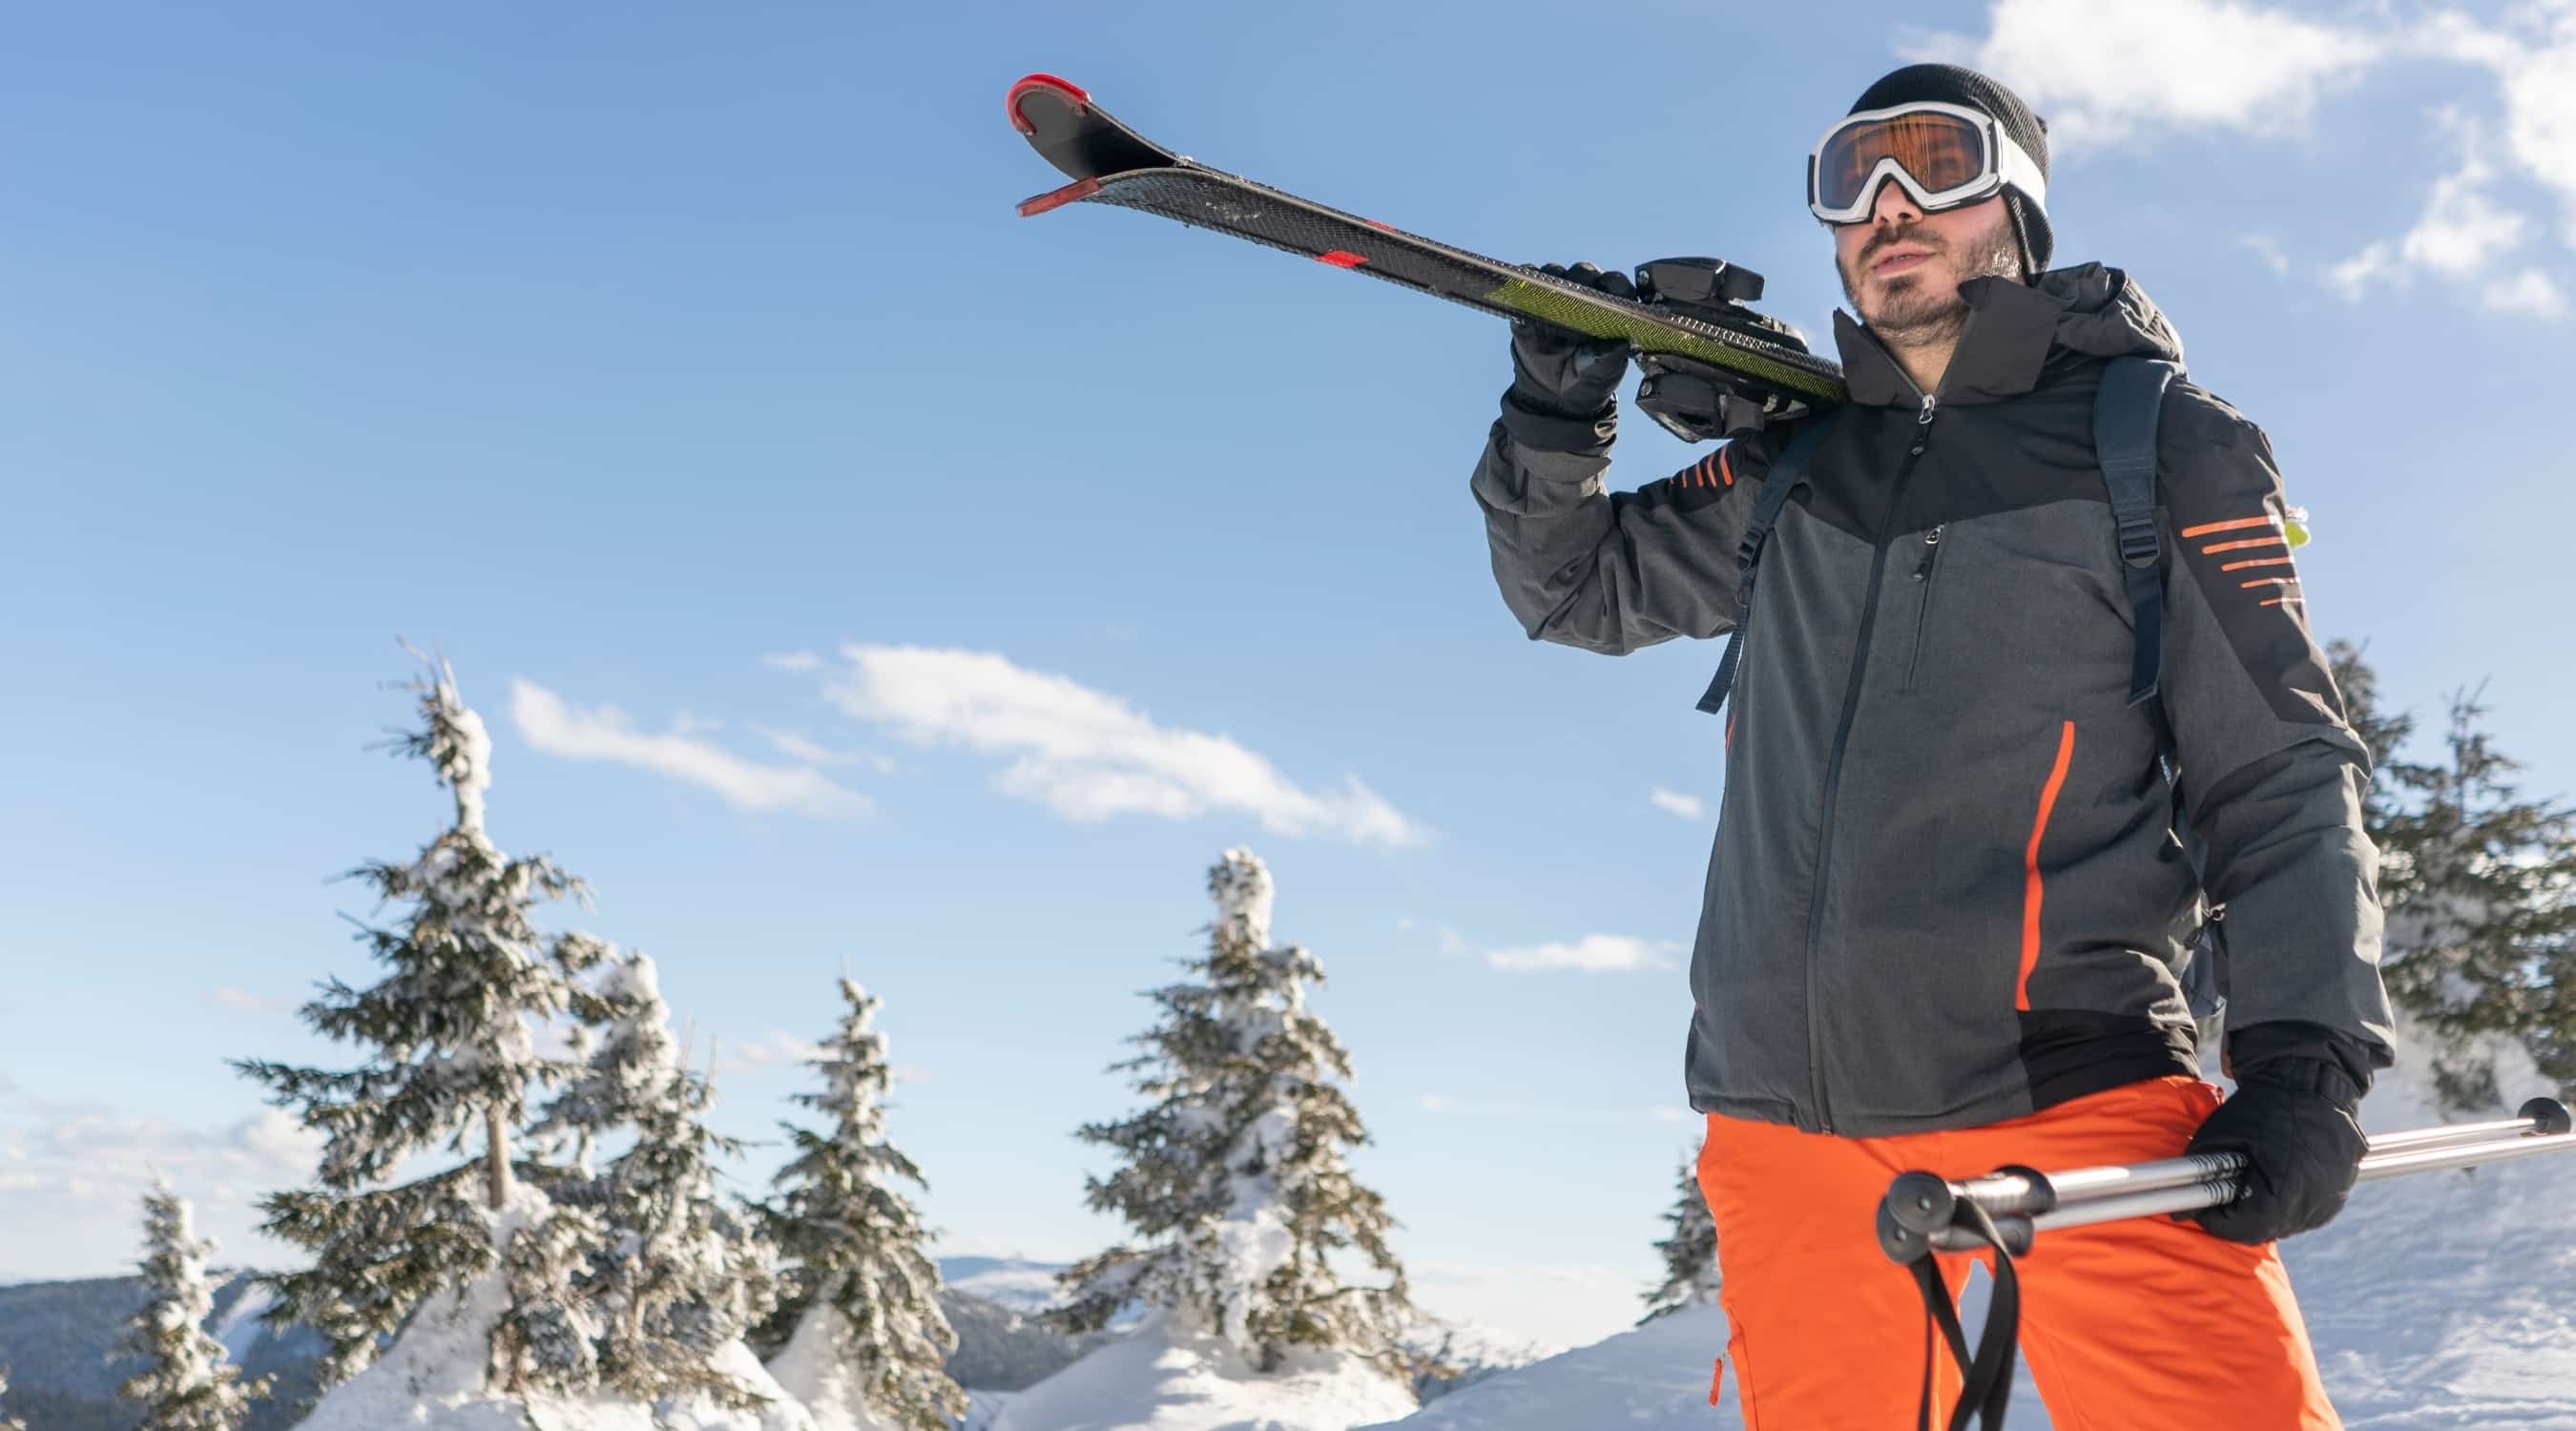 Skijacken Herren - Welche Jacke benötigen Sie für was